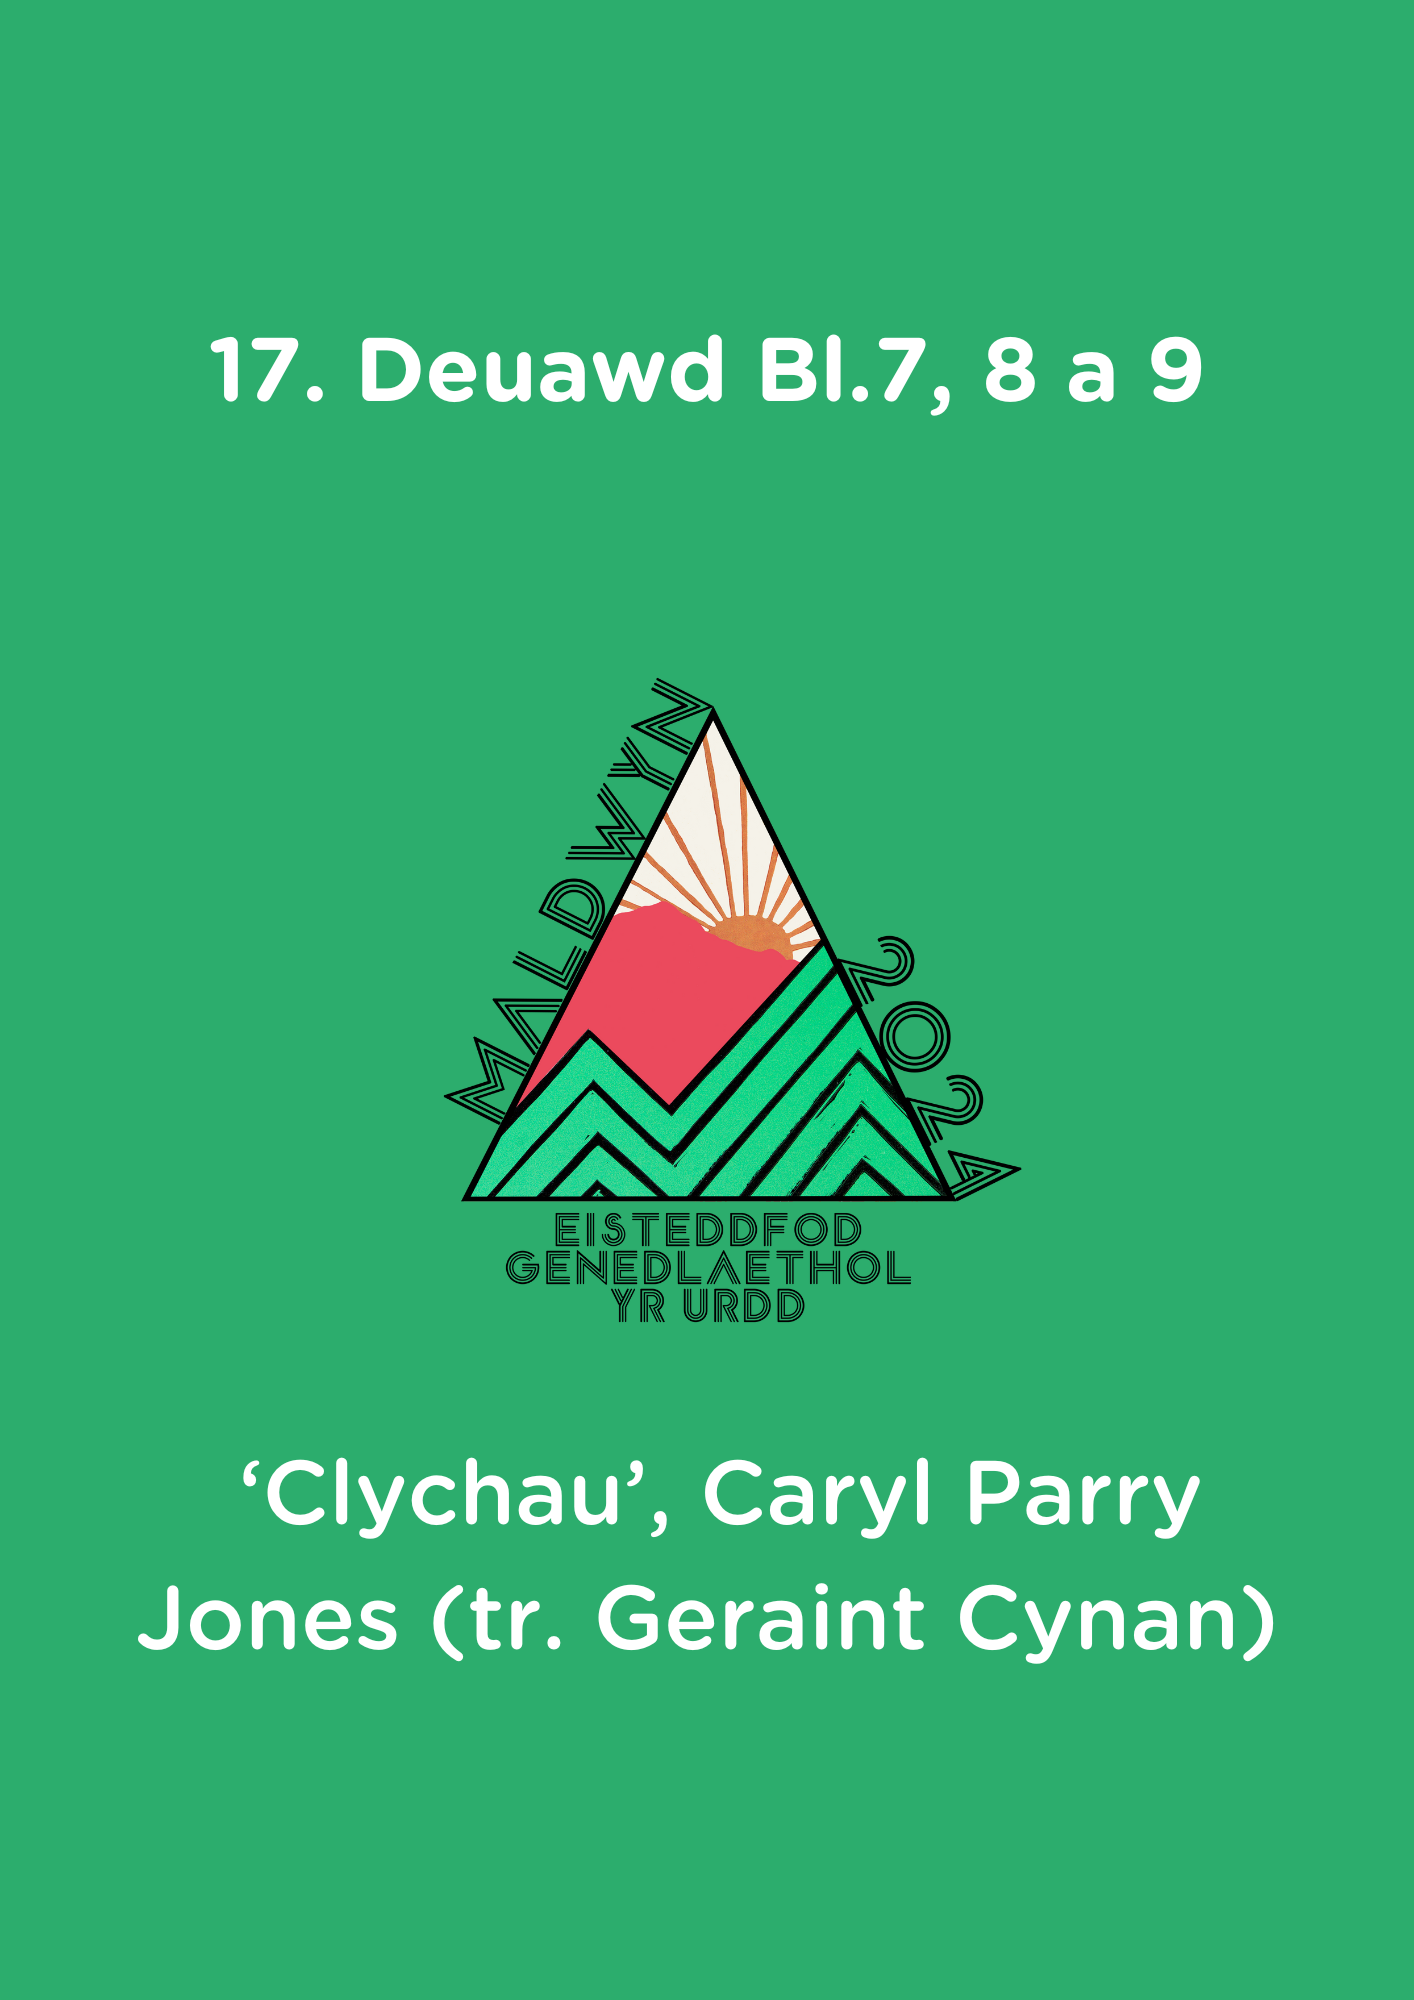 17. Deuawd Bl.7, 8 a 9: Clychau